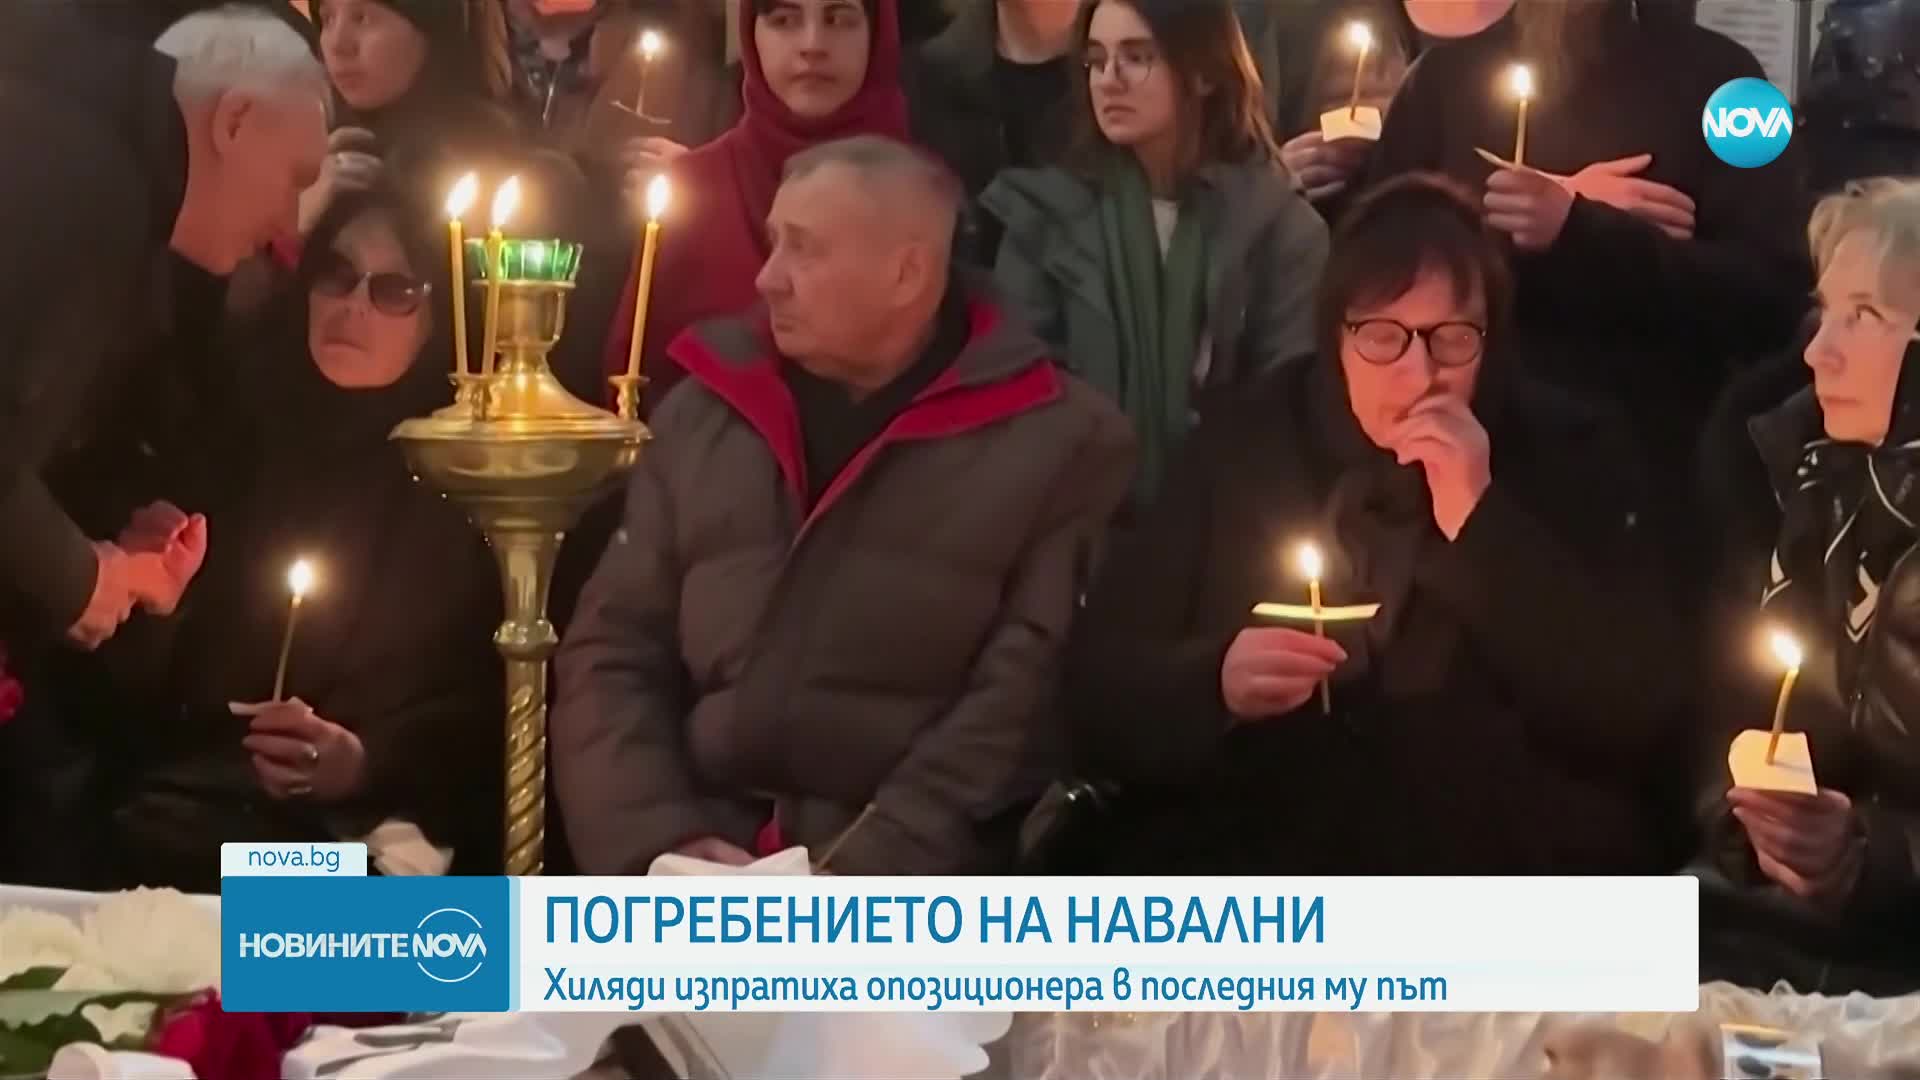 С аплодисменти: Погребаха Навални в Москва, пред храма се изви опашка